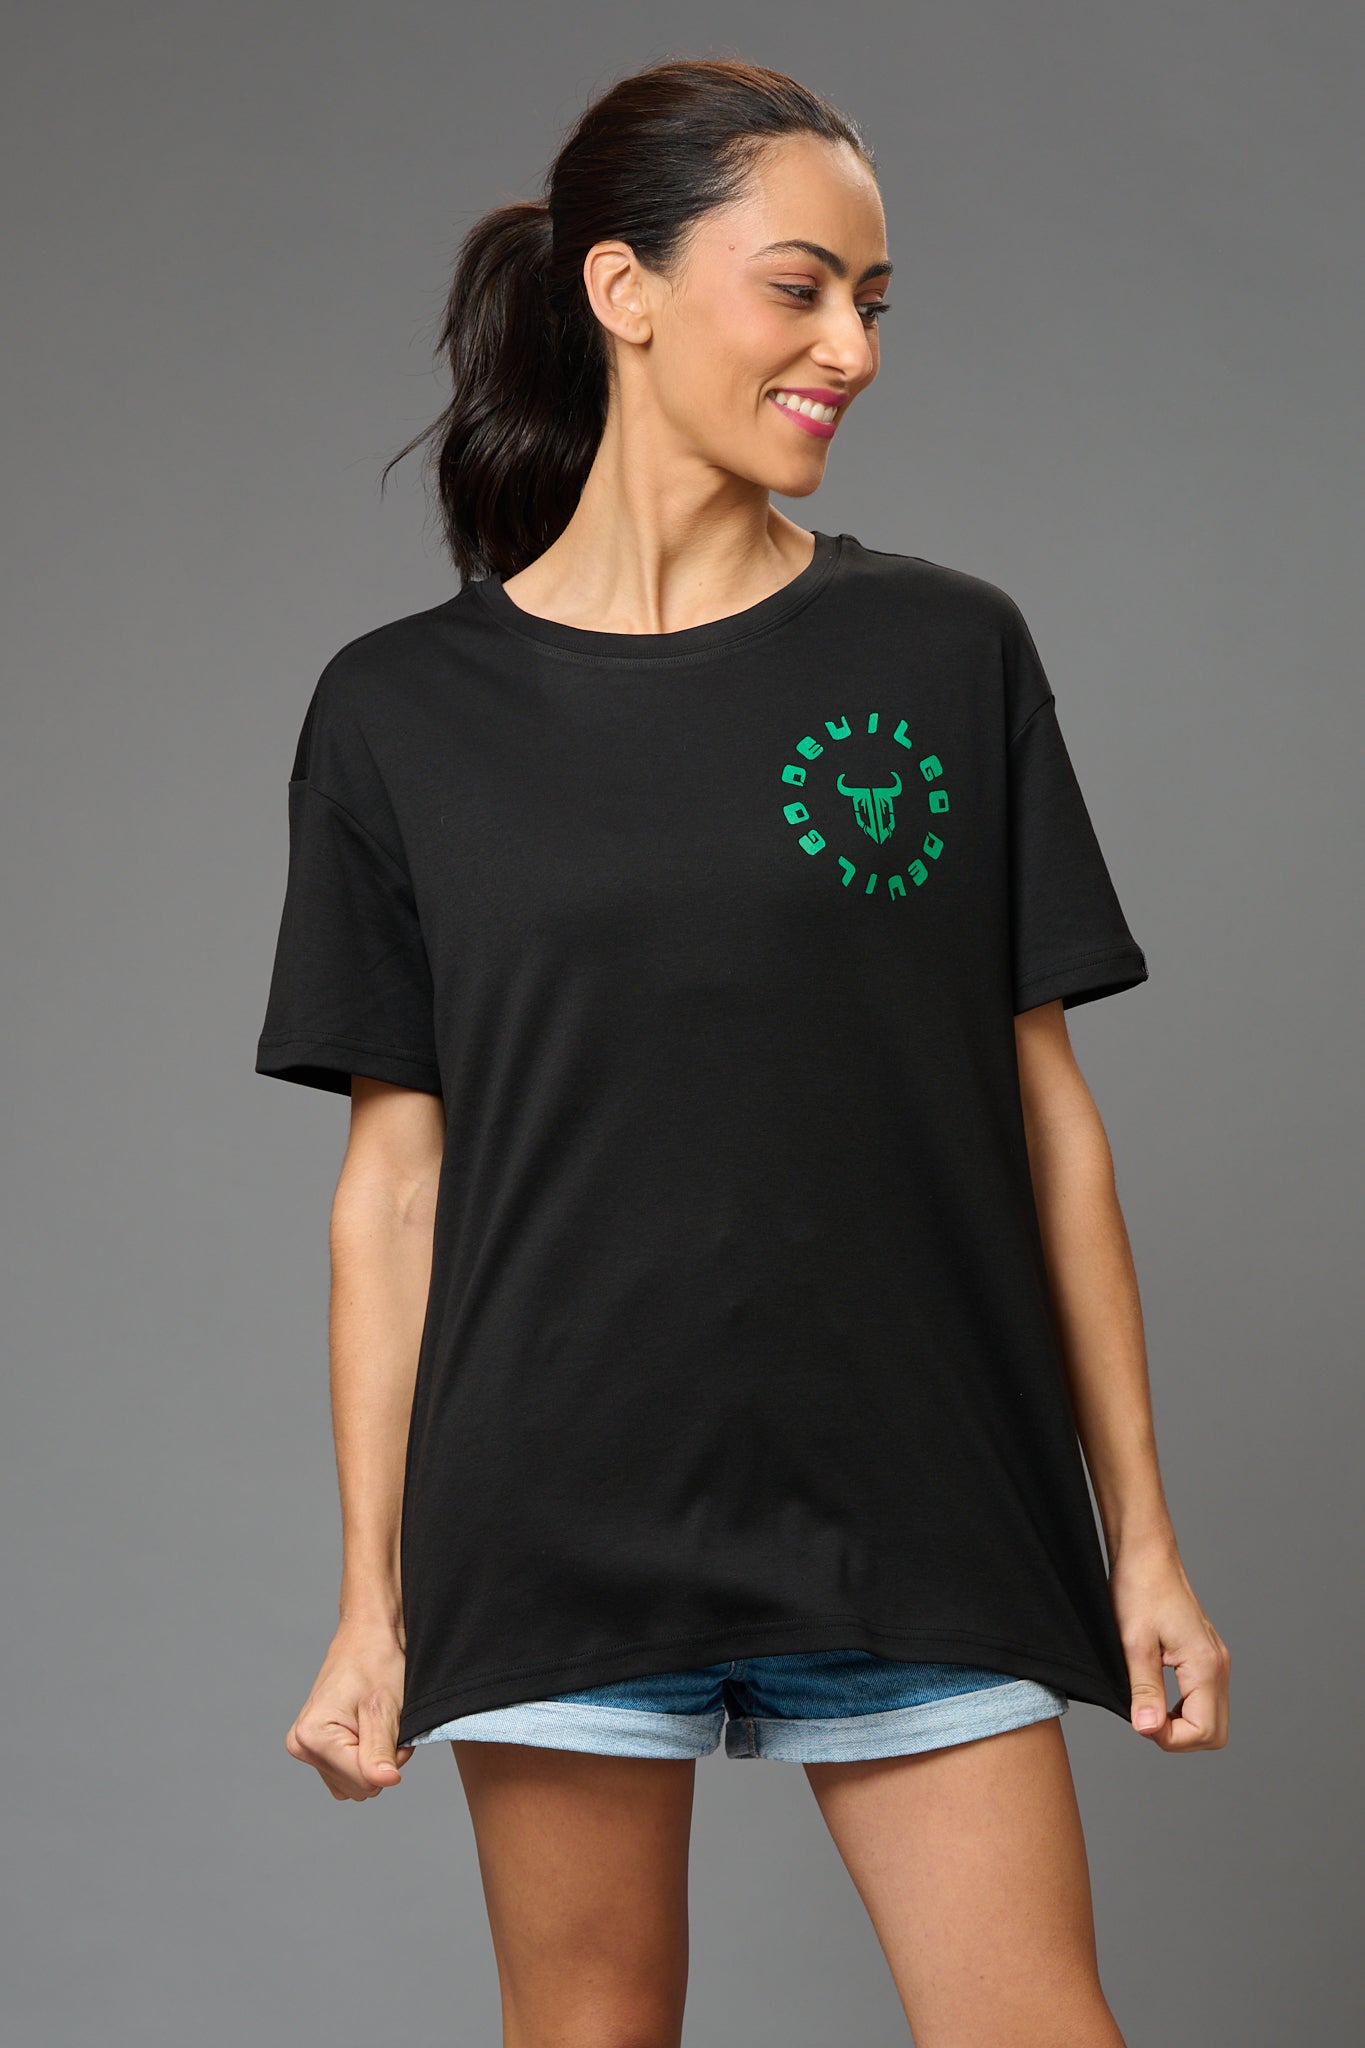 Feel Your Feelings Printed Black Oversized T-Shirt for Women - Go Devil